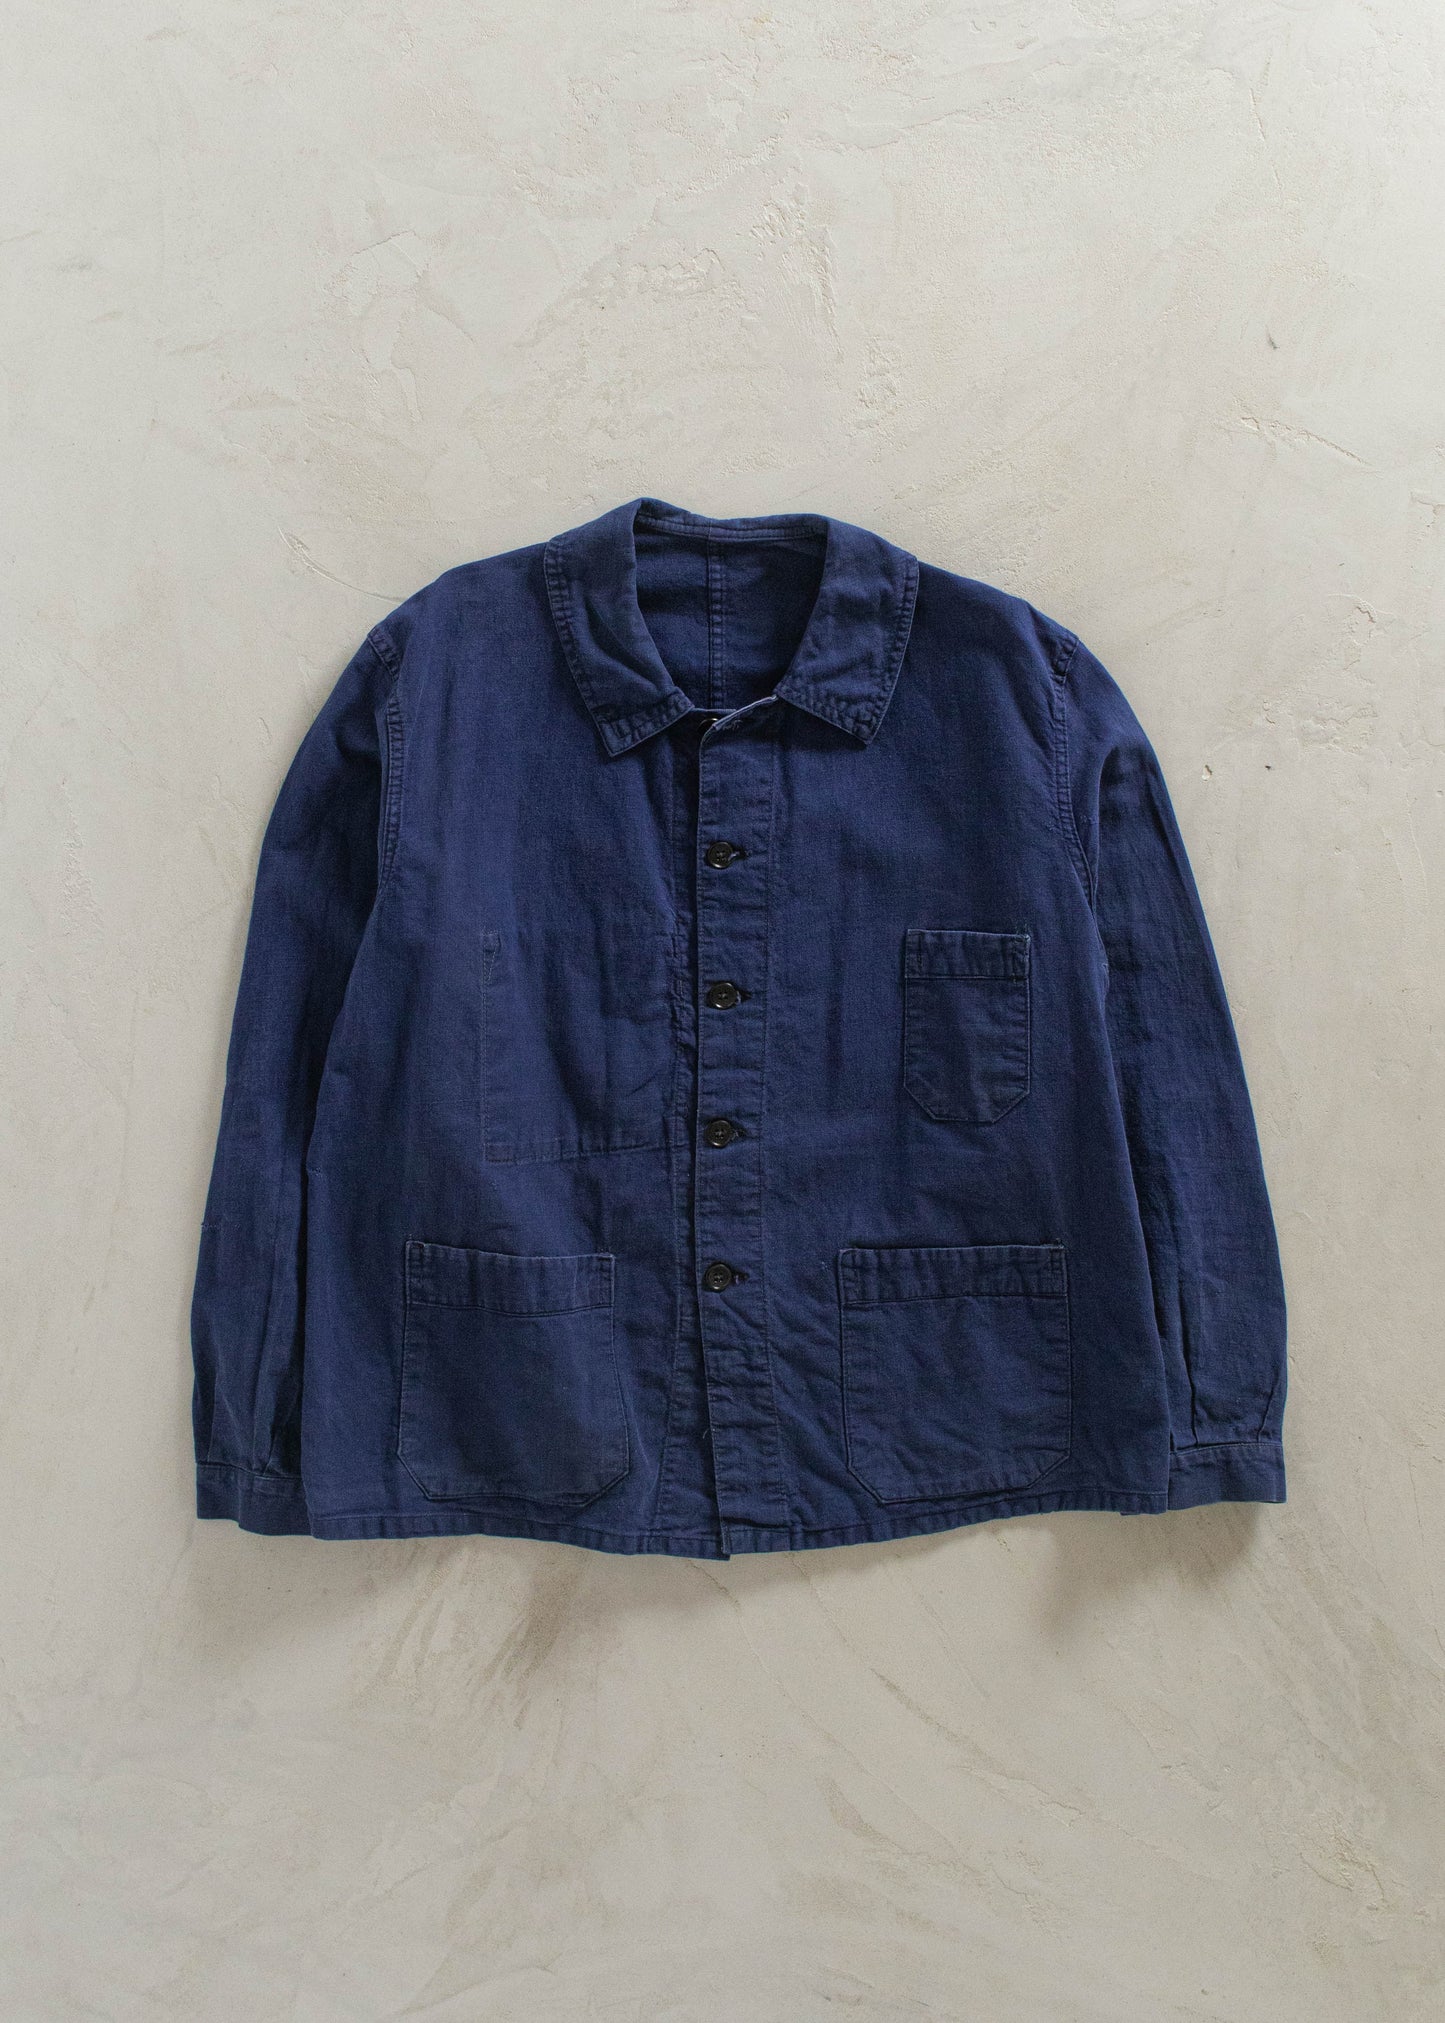 1980s Bleu de Travail French Workwear Chore Jacket Size L/XL